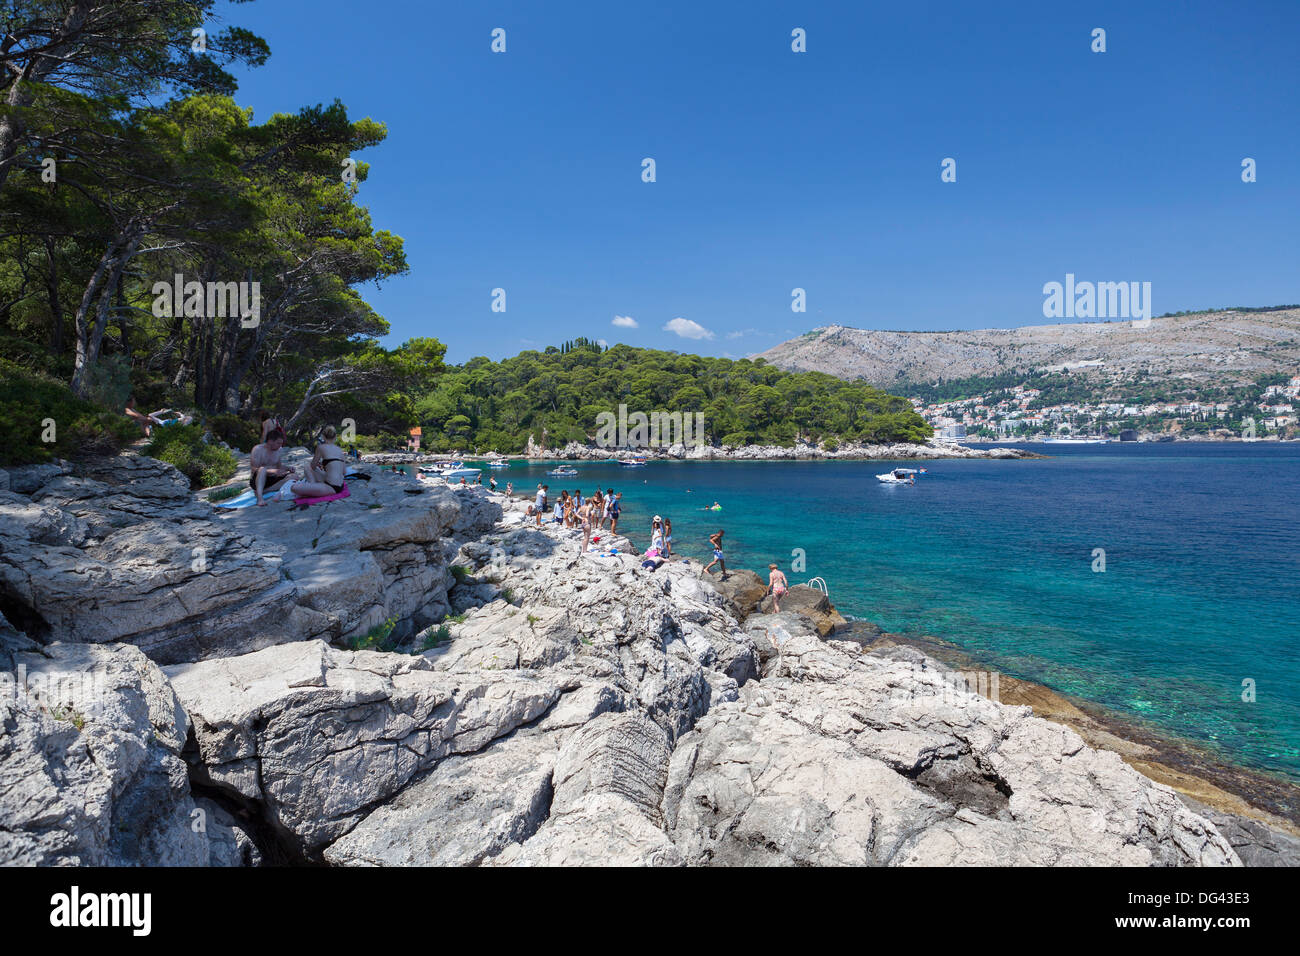 Lokrum Island, Dubrovnik, Dalmatia, Croatia, Europe Stock Photo